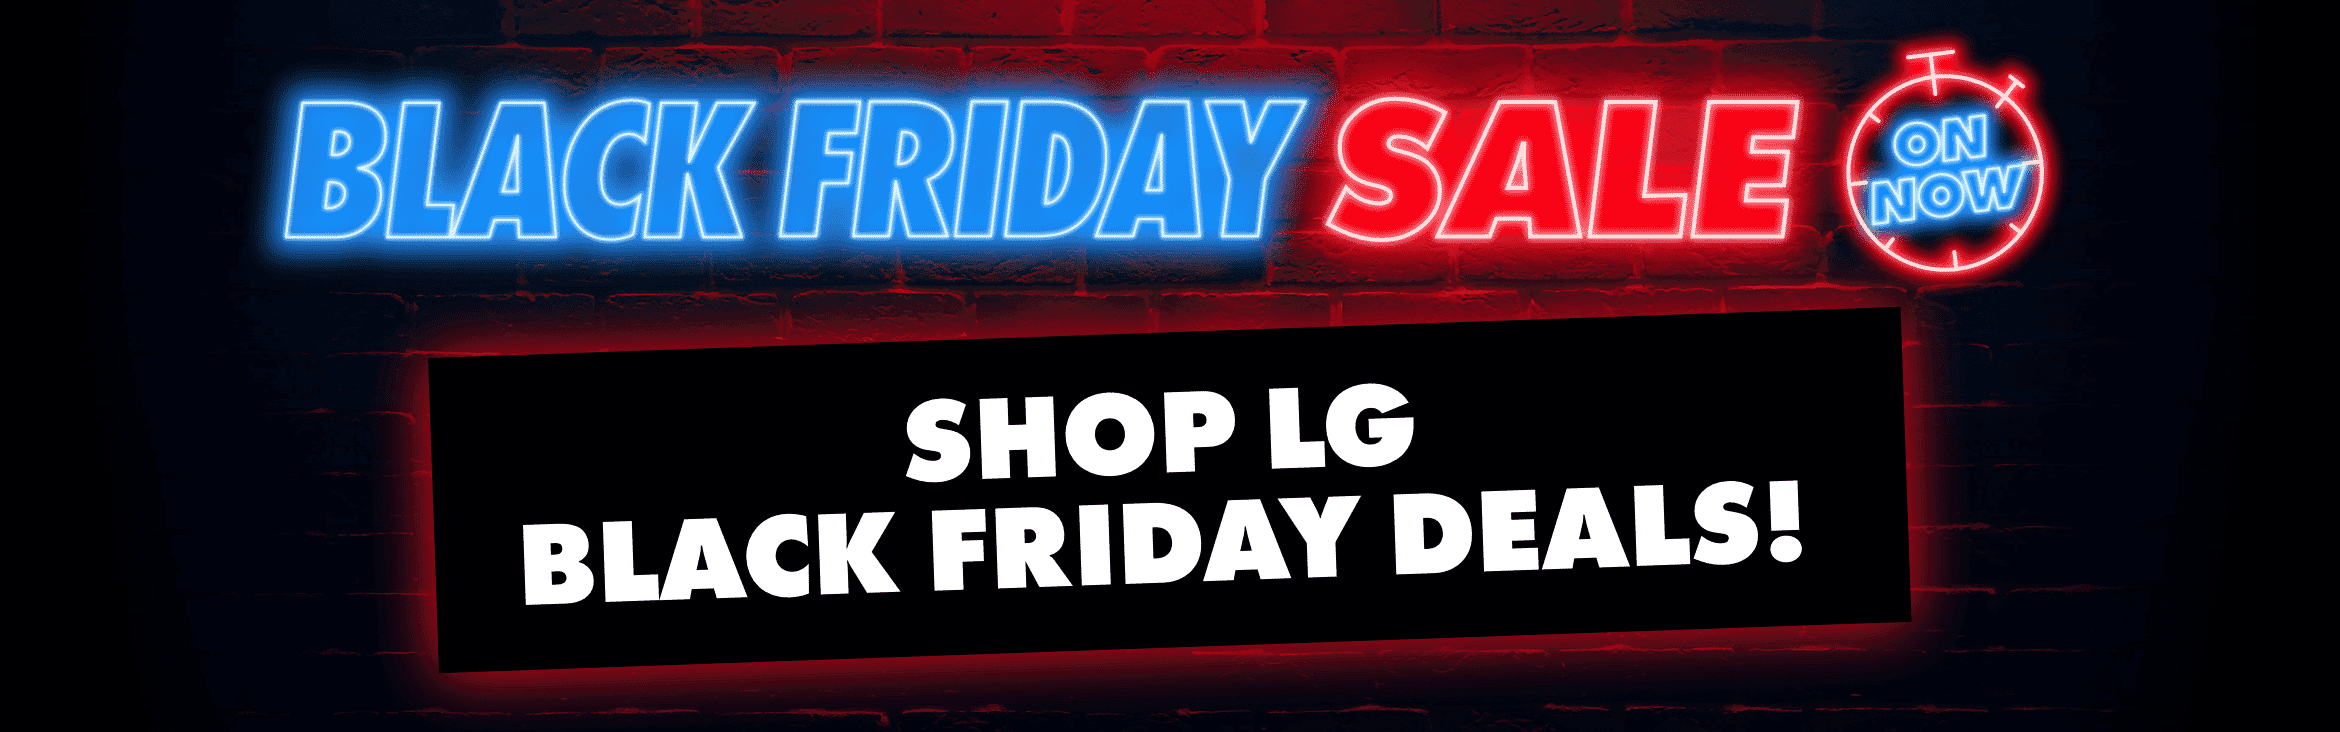 Shop LG Black Friday Deals.